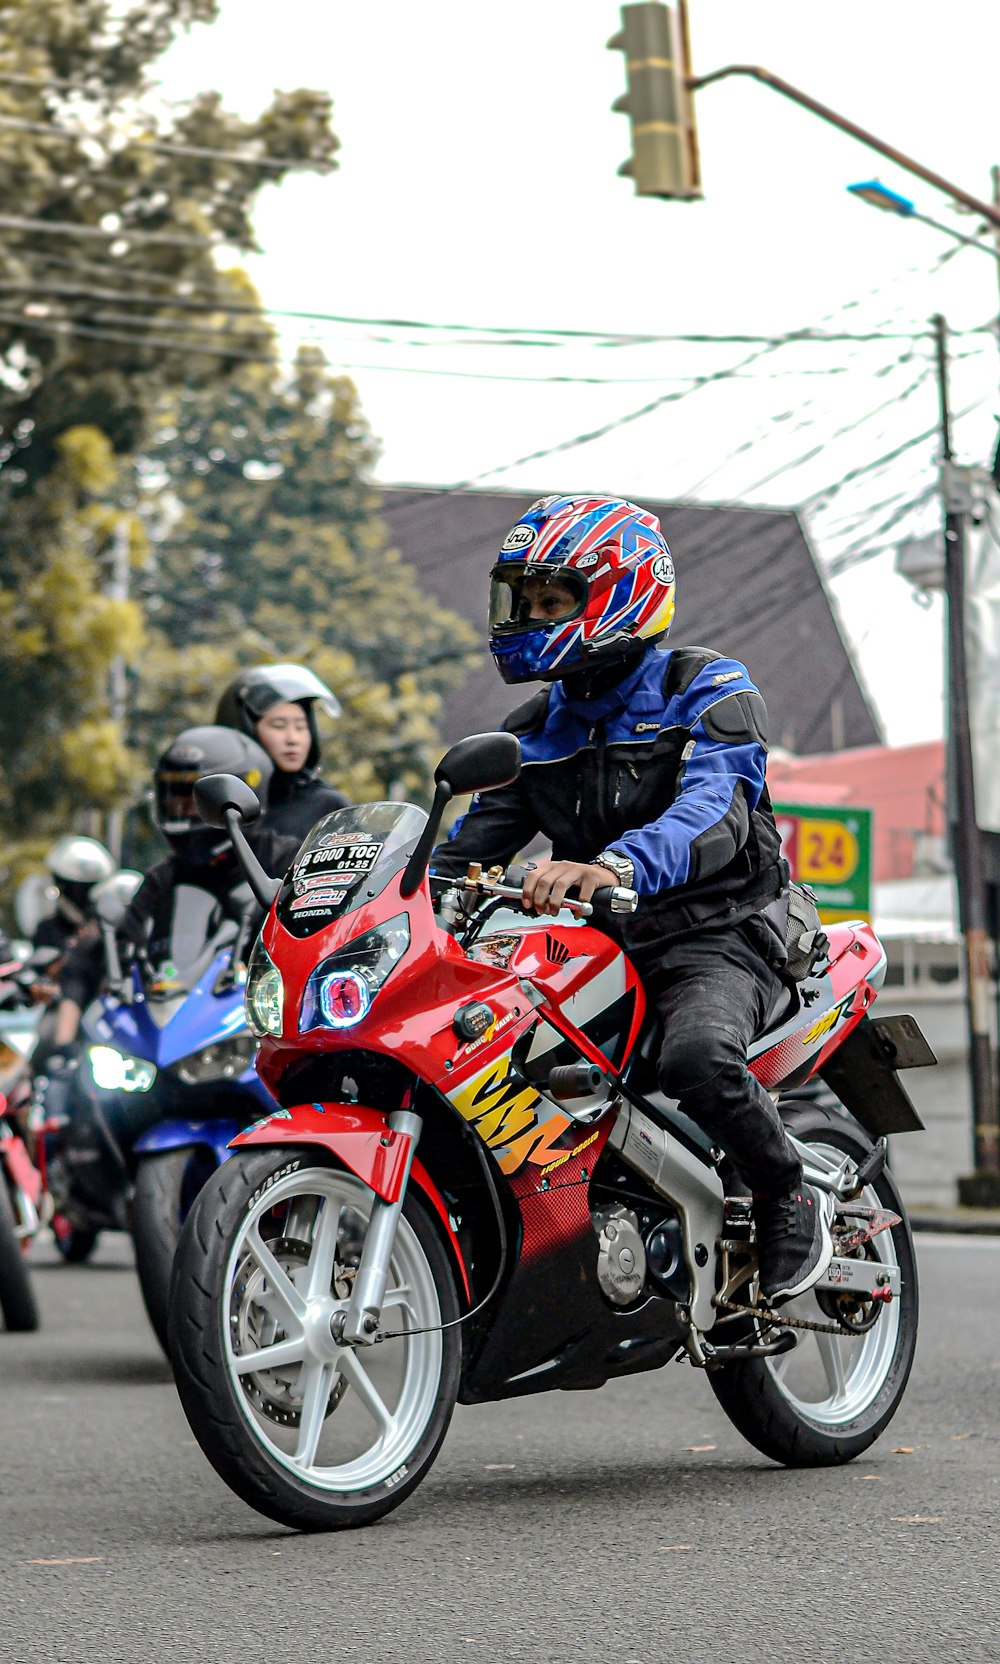 Un hombre conduciendo una motocicleta roja por una calle